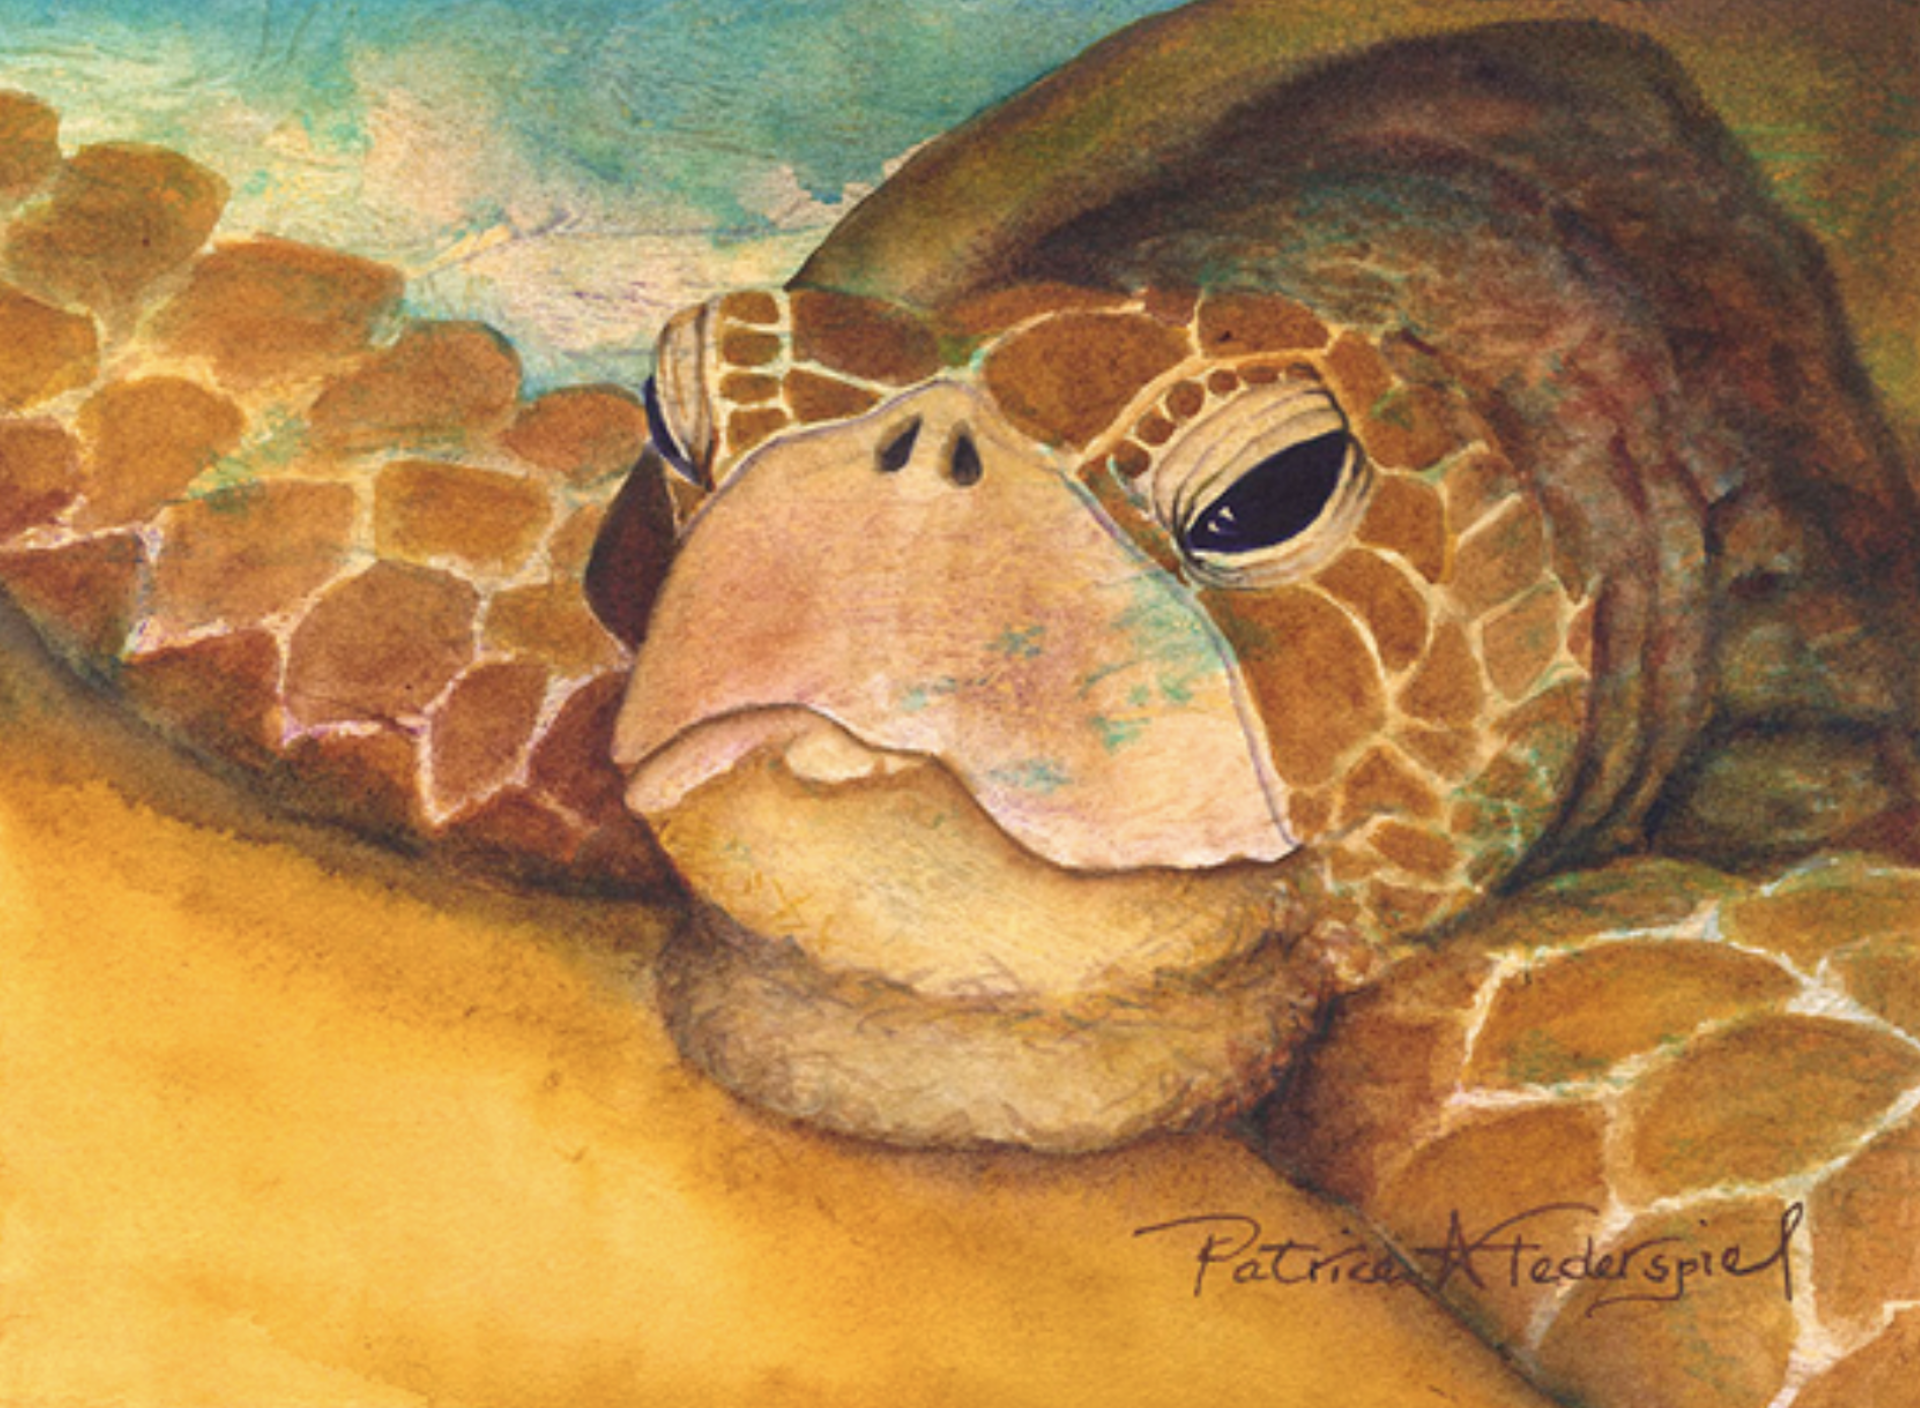 Hawaiian Basking Turtle by Patrice Ann Federspiel